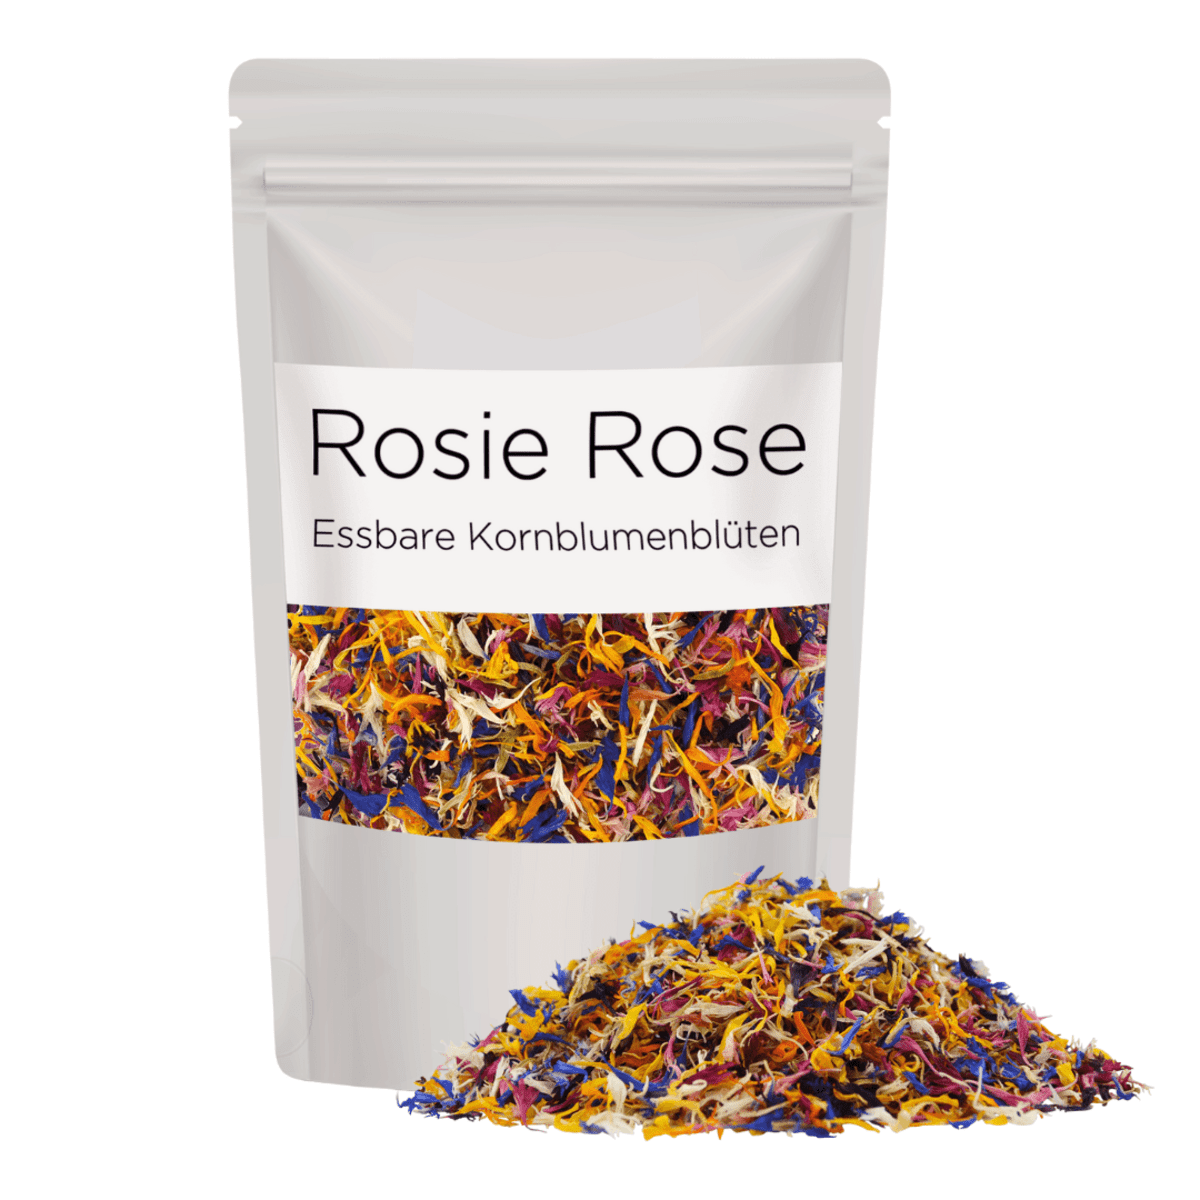 Kornblumenblüten in Classic Mix - Perfekt für große Mengen Von ROSIE ROSE im Online-Shop kaufen